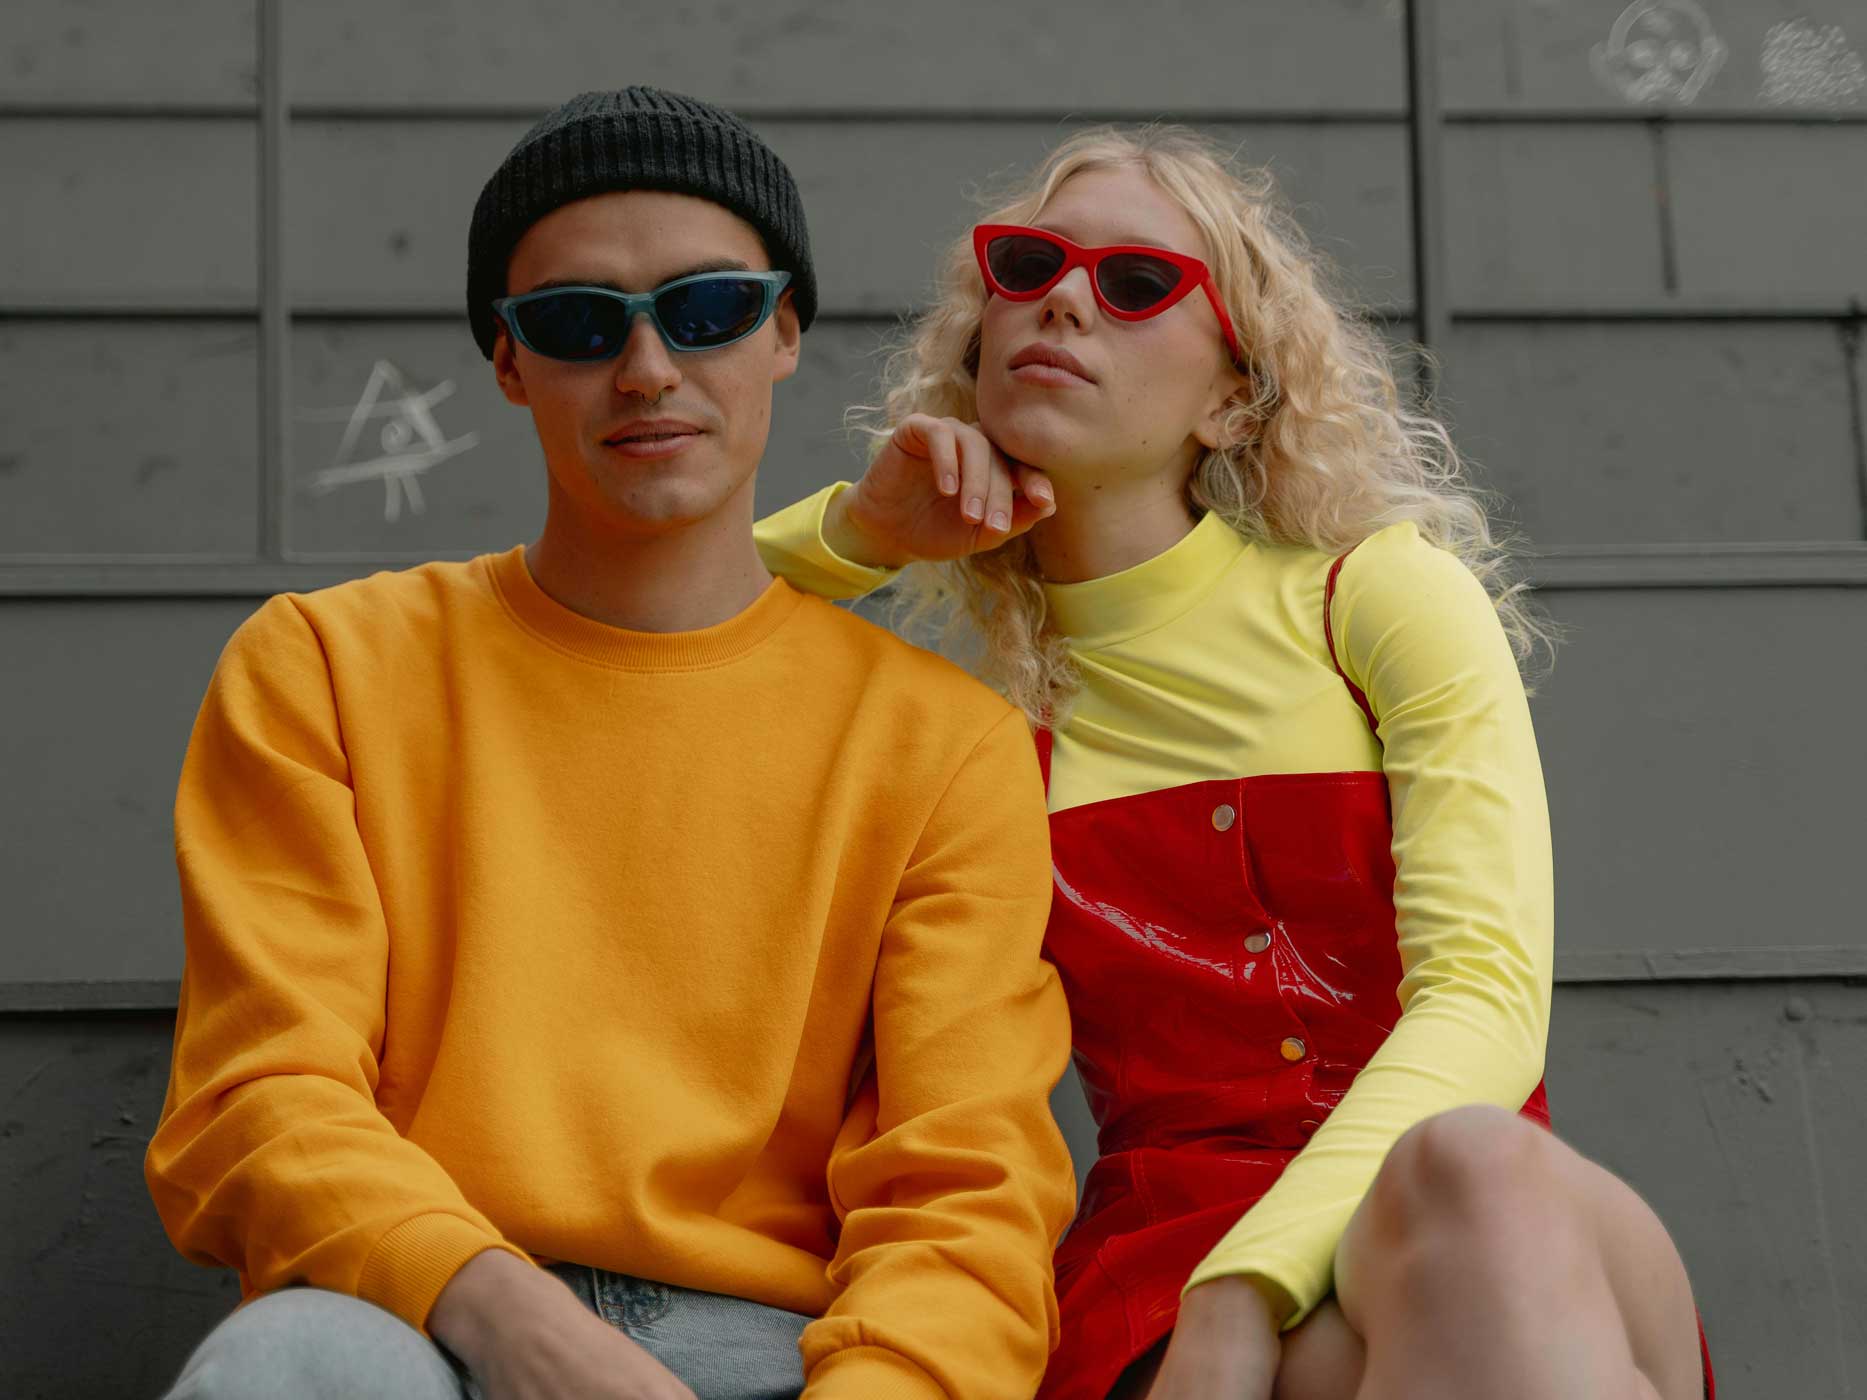 Junge und Mädchen tragen auffällige, knallige Kleidung in den Neonfarben, Rot, Gelb und Orange